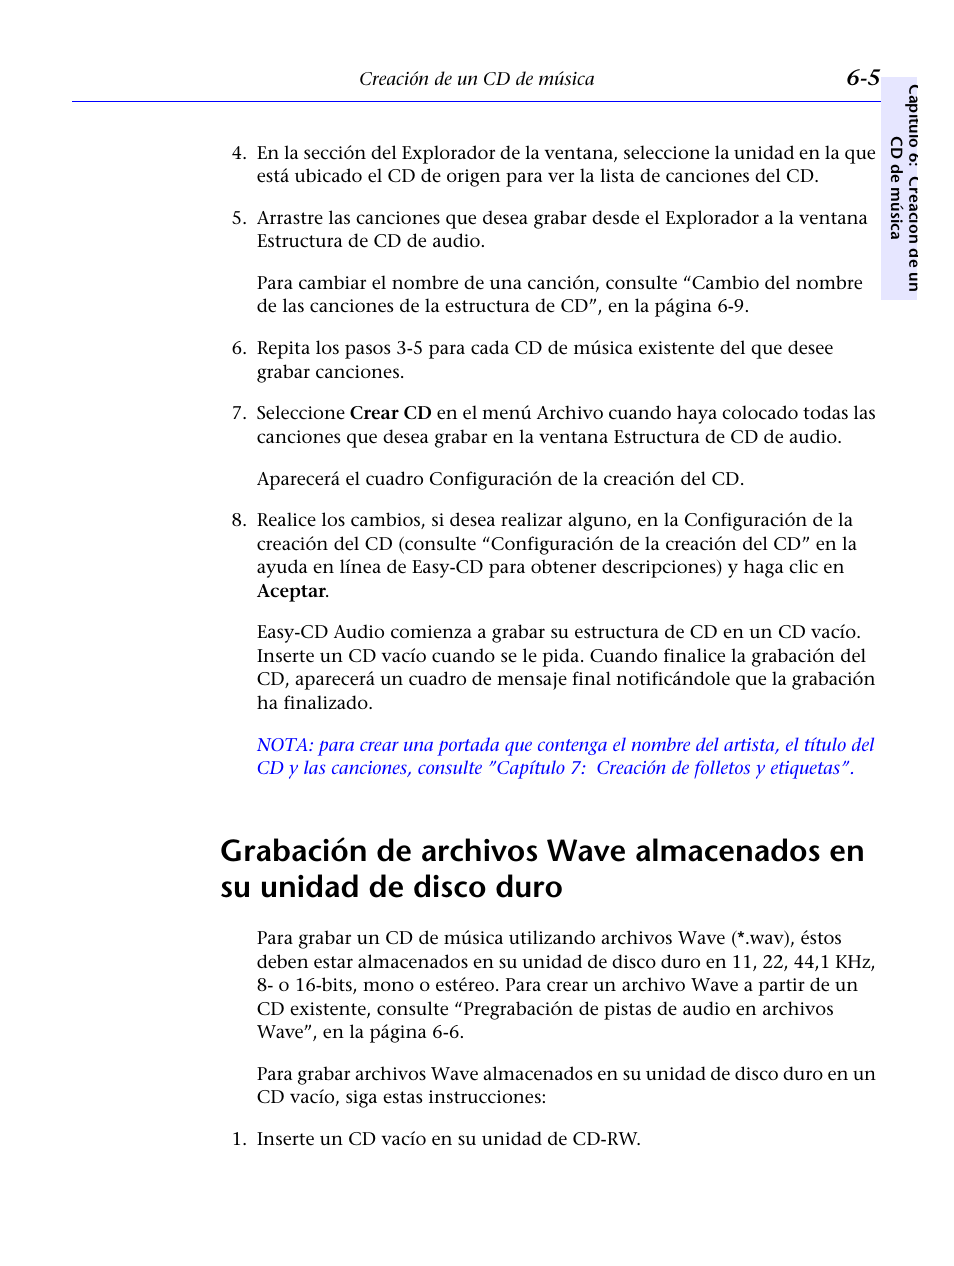 Grabación de archivos wave almacenados en | HP Unidad Interna HP CD-Writer Plus 7200i Manual del usuario | Página 56 / 218